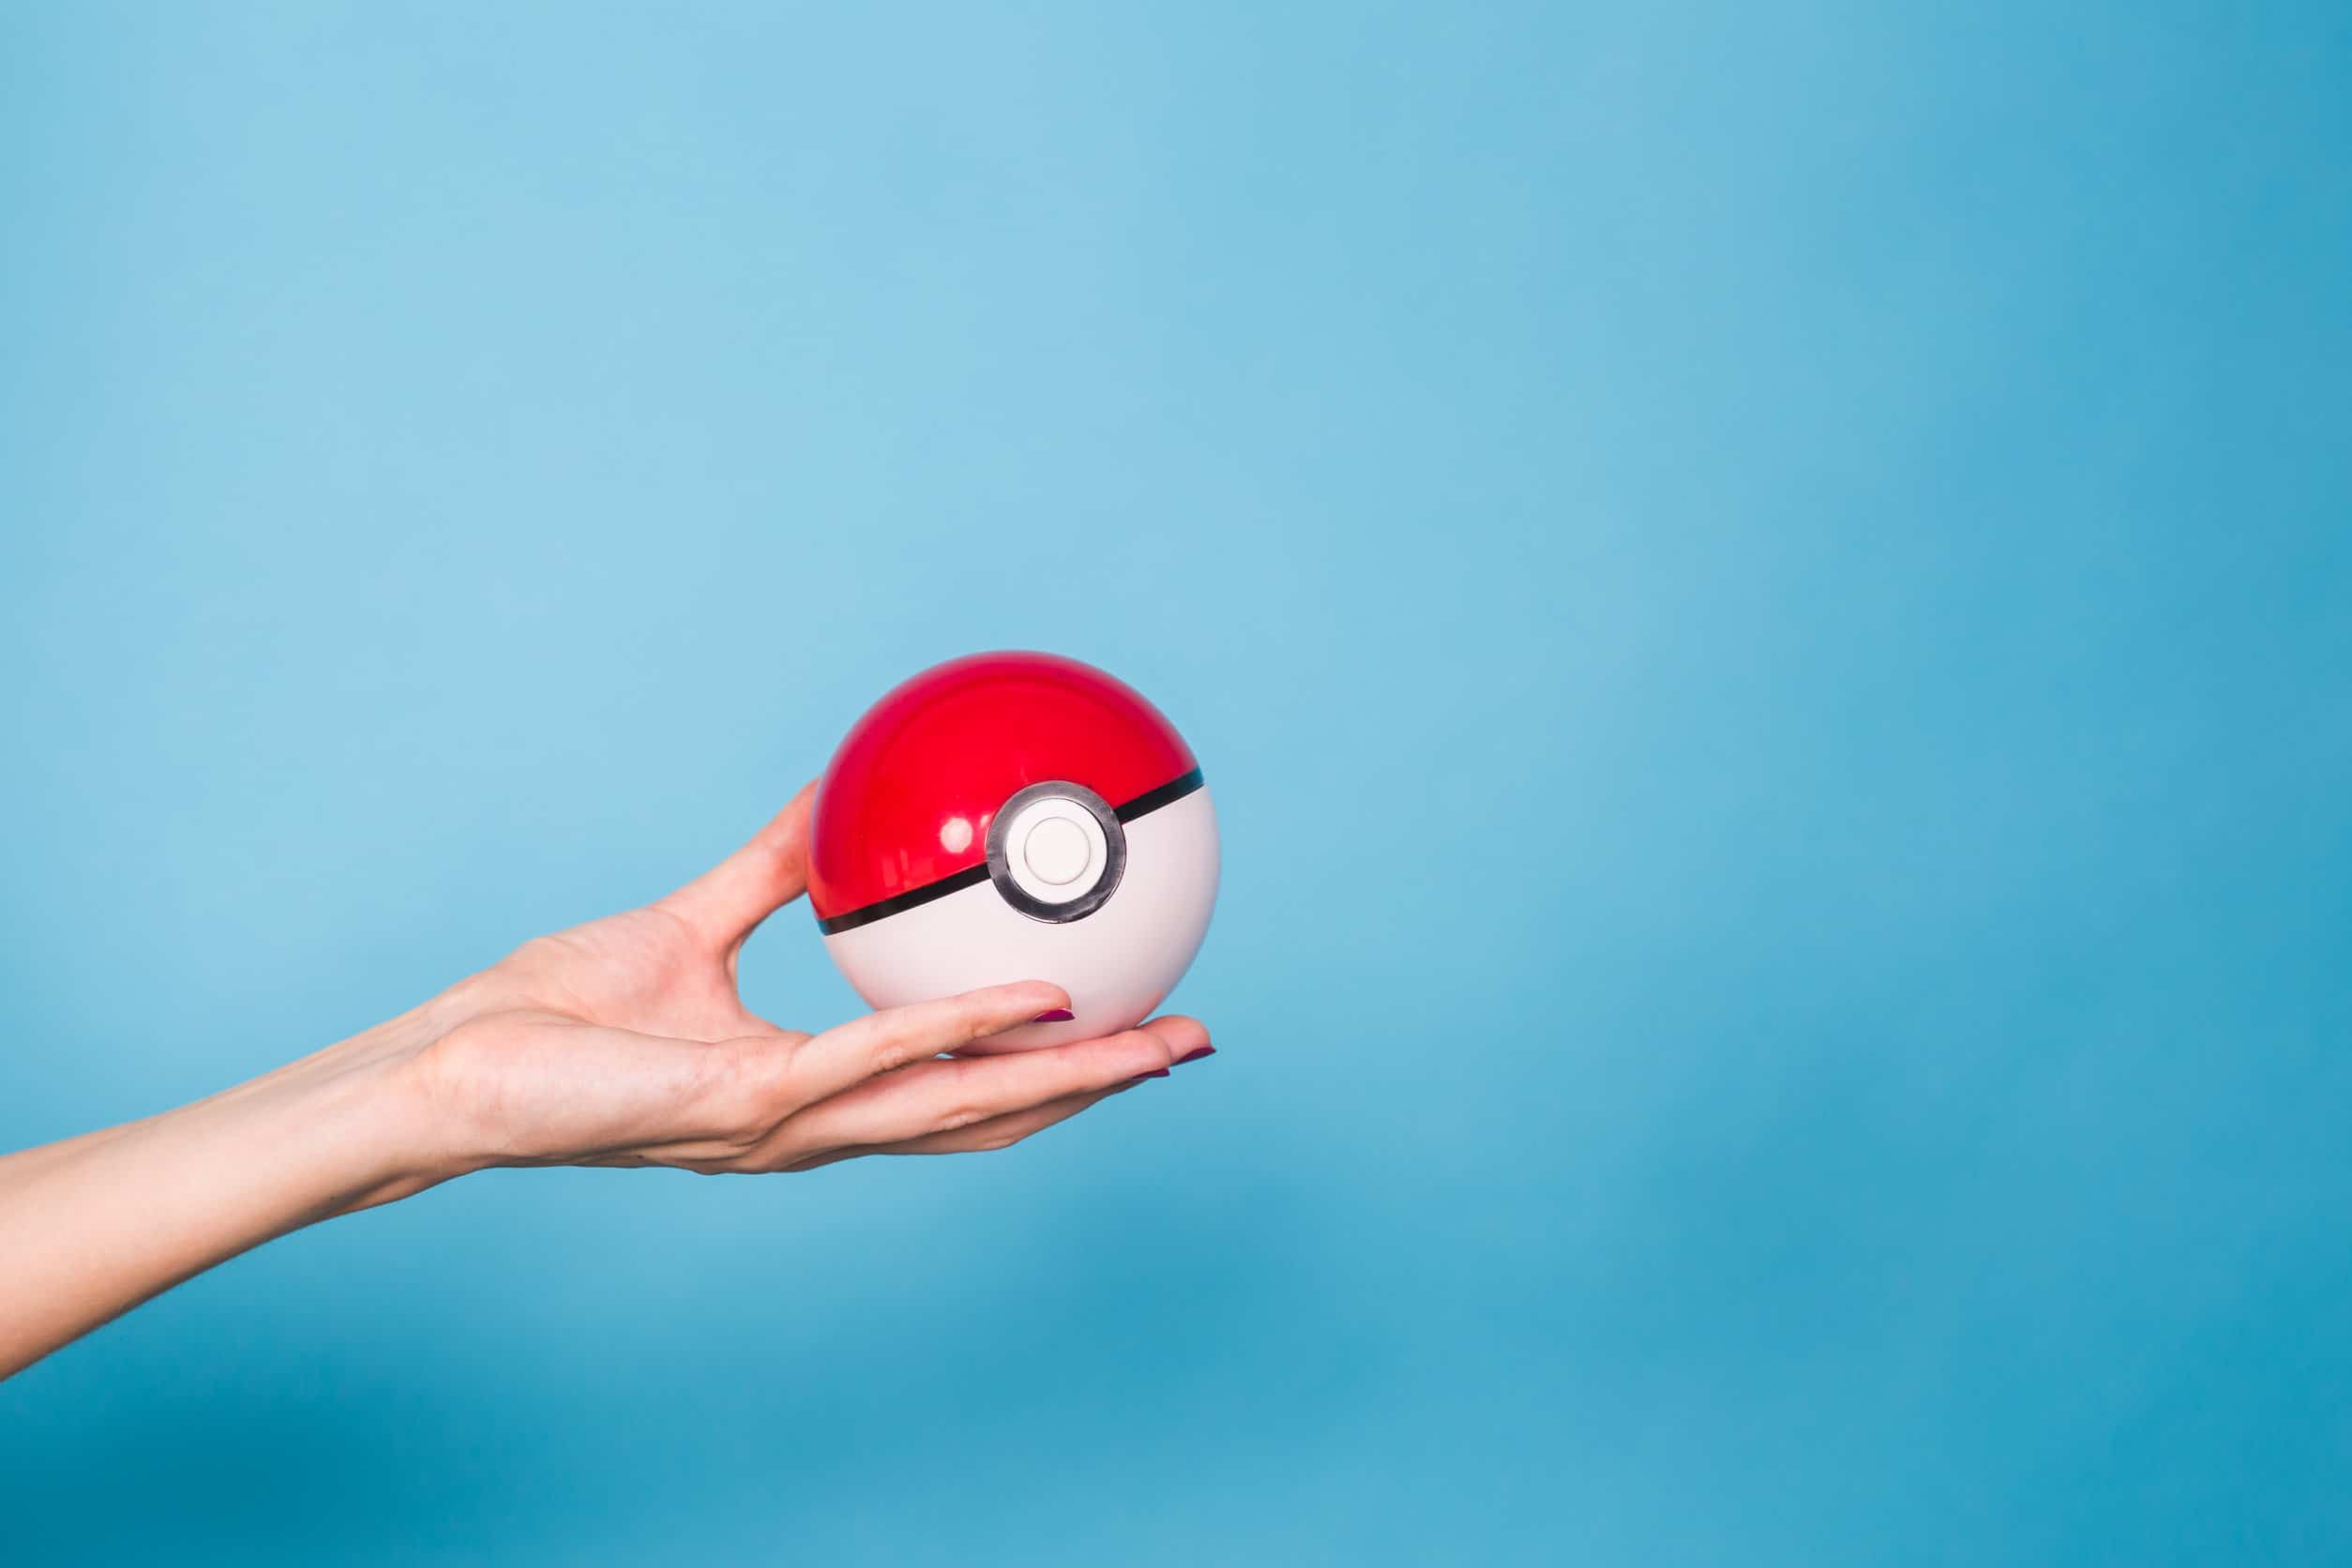 Una mano che tiene una pokeball pokémon rossa e bianca su uno sfondo blu